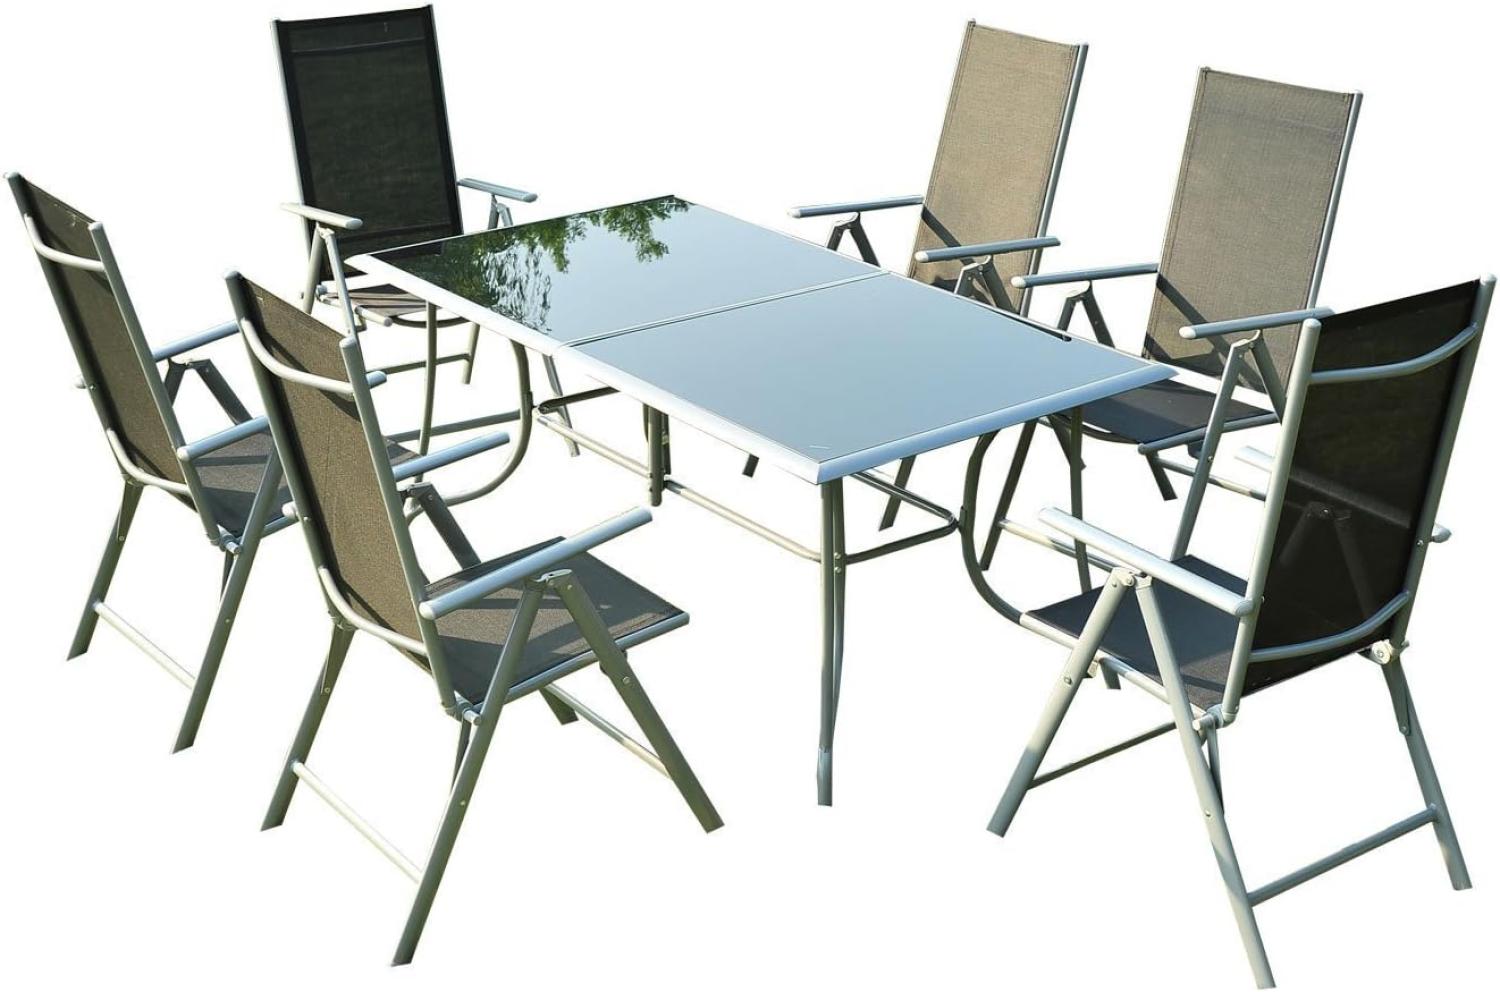 Outsunny - Alu Gartentischset mit schwarzer Glasplatte klappbar, mit 6 Stühlen - schwarz-silber - Outsunny Bild 1